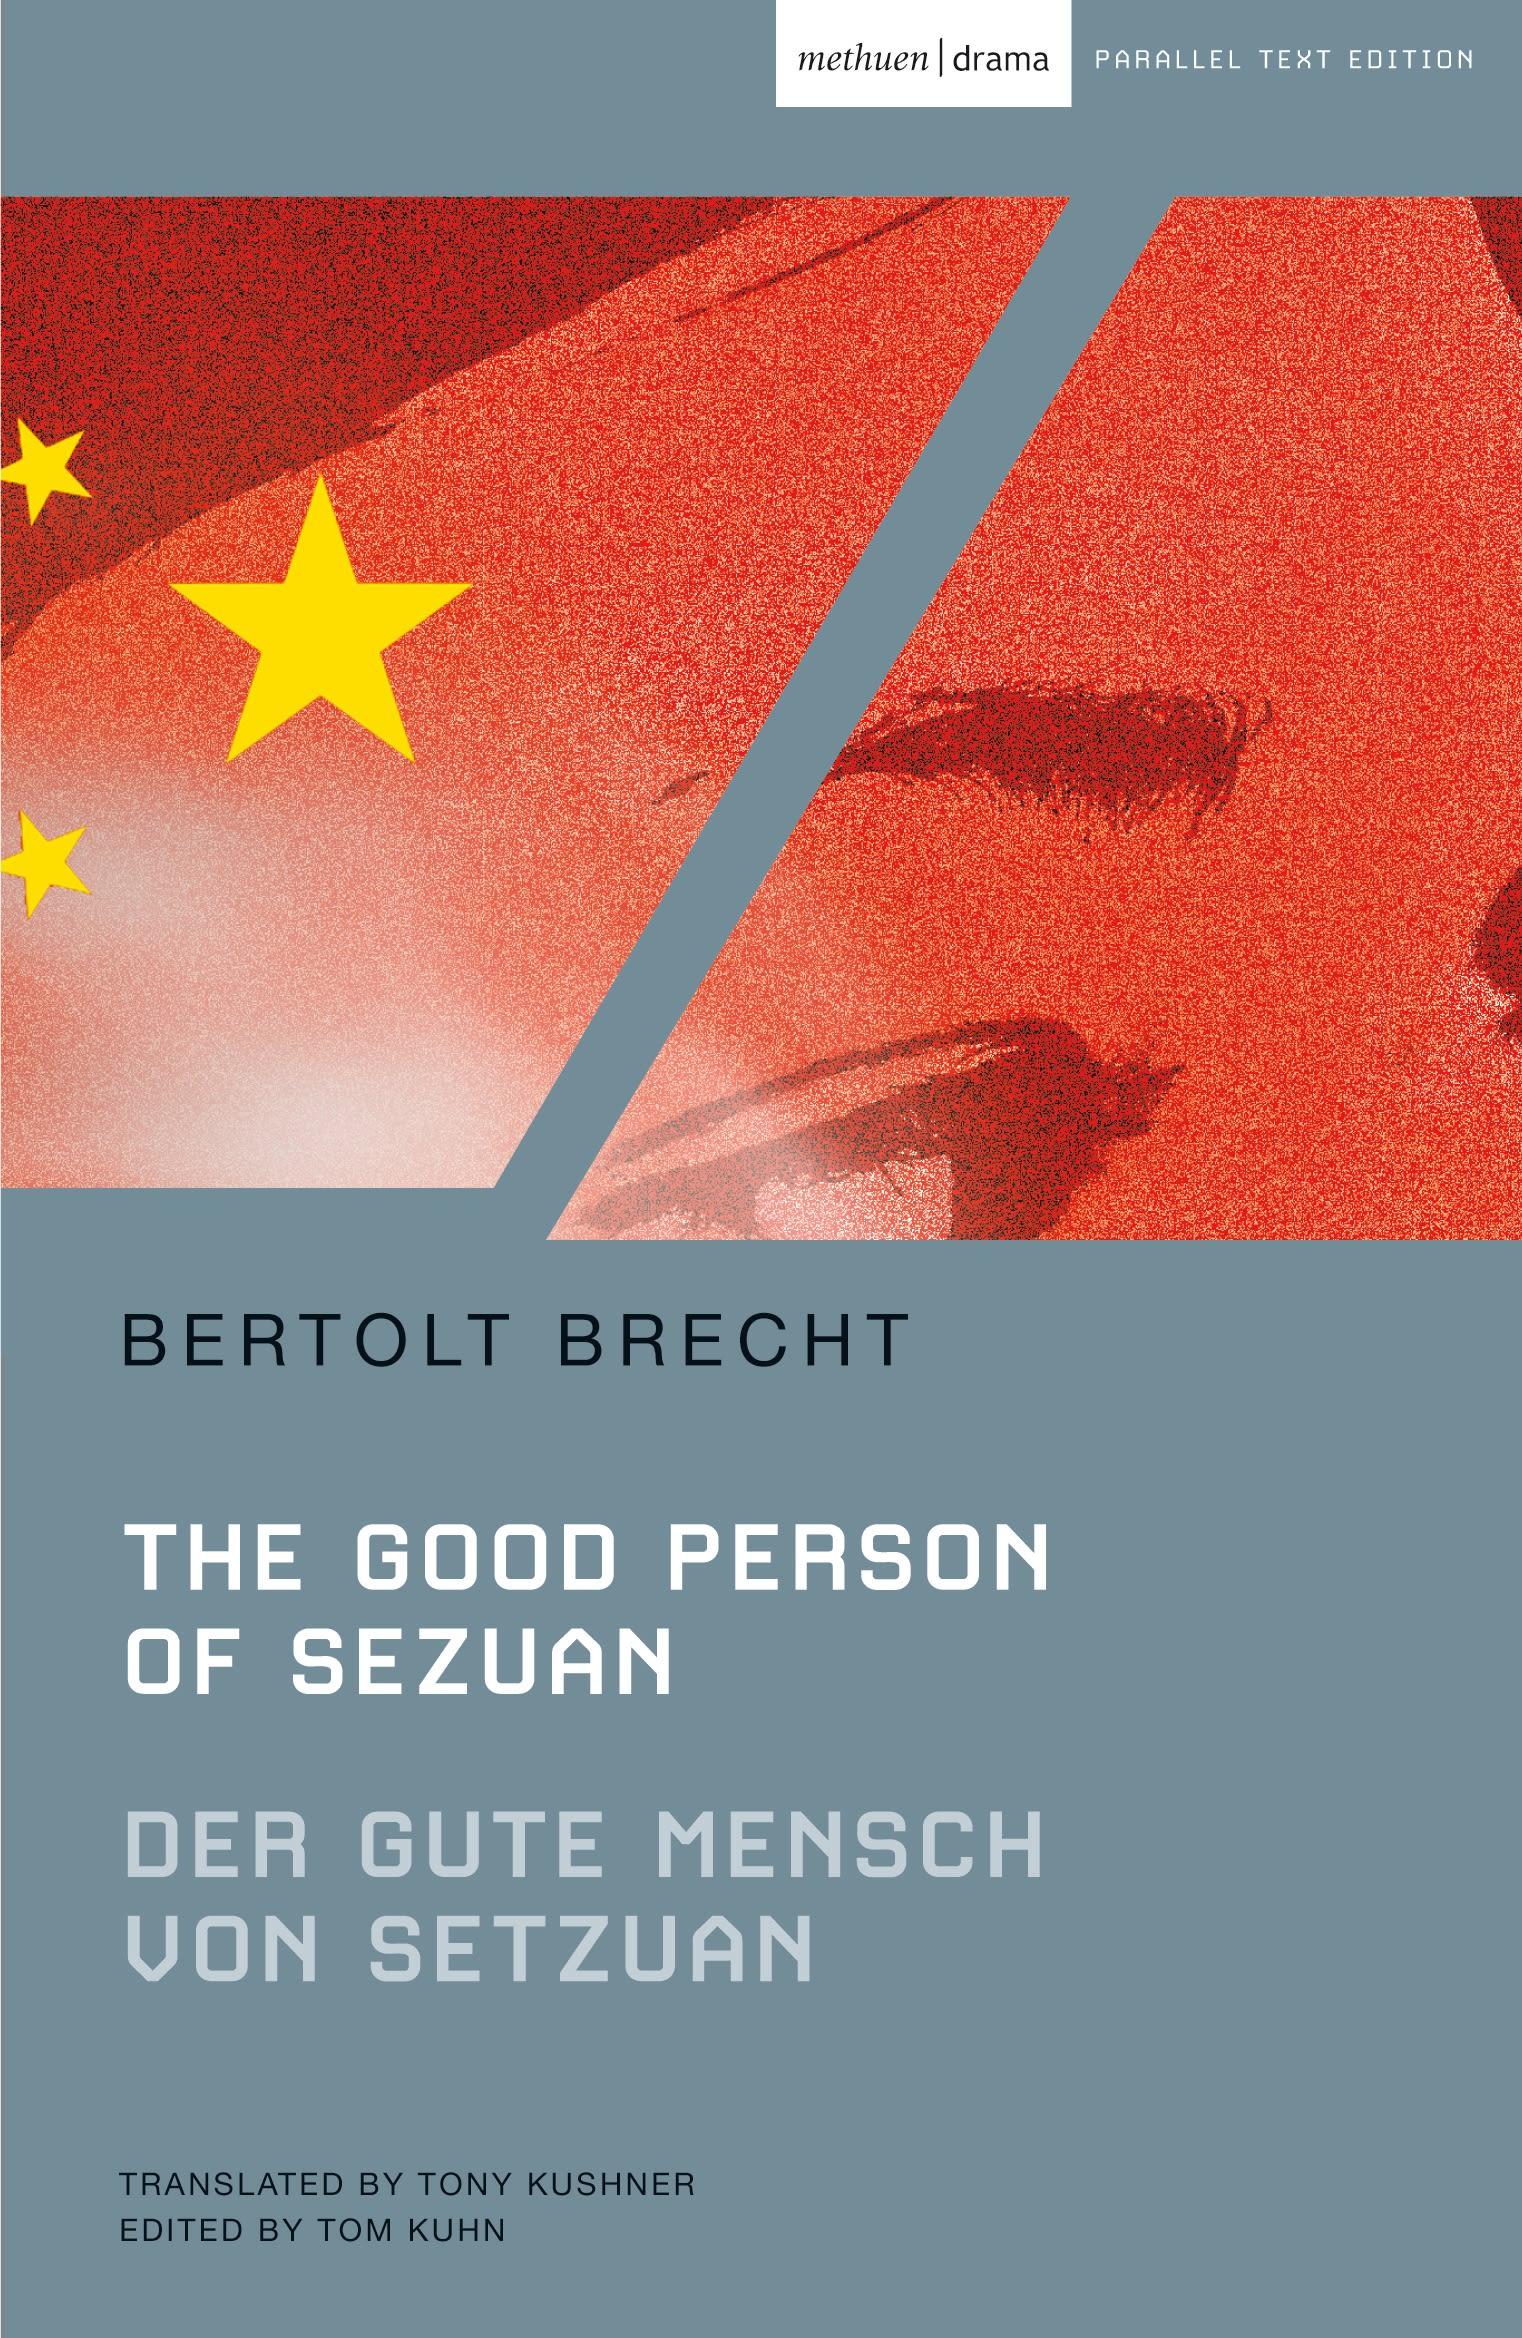 The Good Person of Szechwan / Der gute Mensch von Sezuan / Bertolt Brecht / Taschenbuch / Kartoniert / Broschiert / Englisch / 2011 / Bloomsbury Publishing PLC / EAN 9781408111505 - Brecht, Bertolt